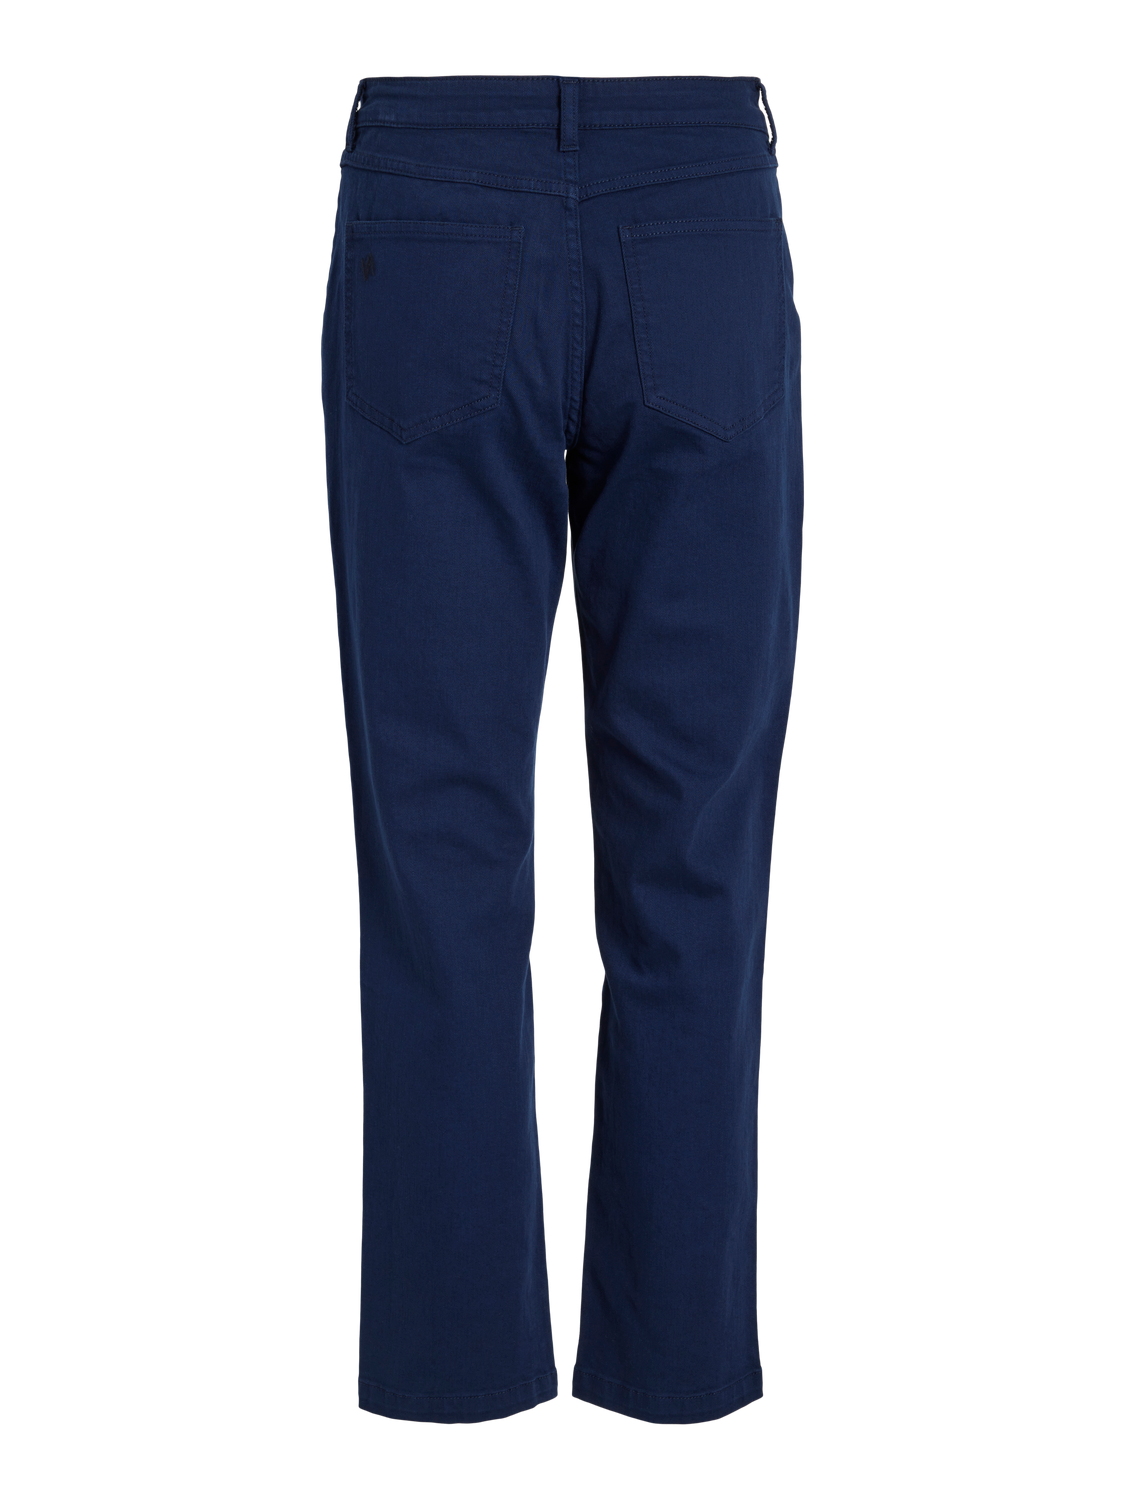 VIALICE Jeans - Navy blue